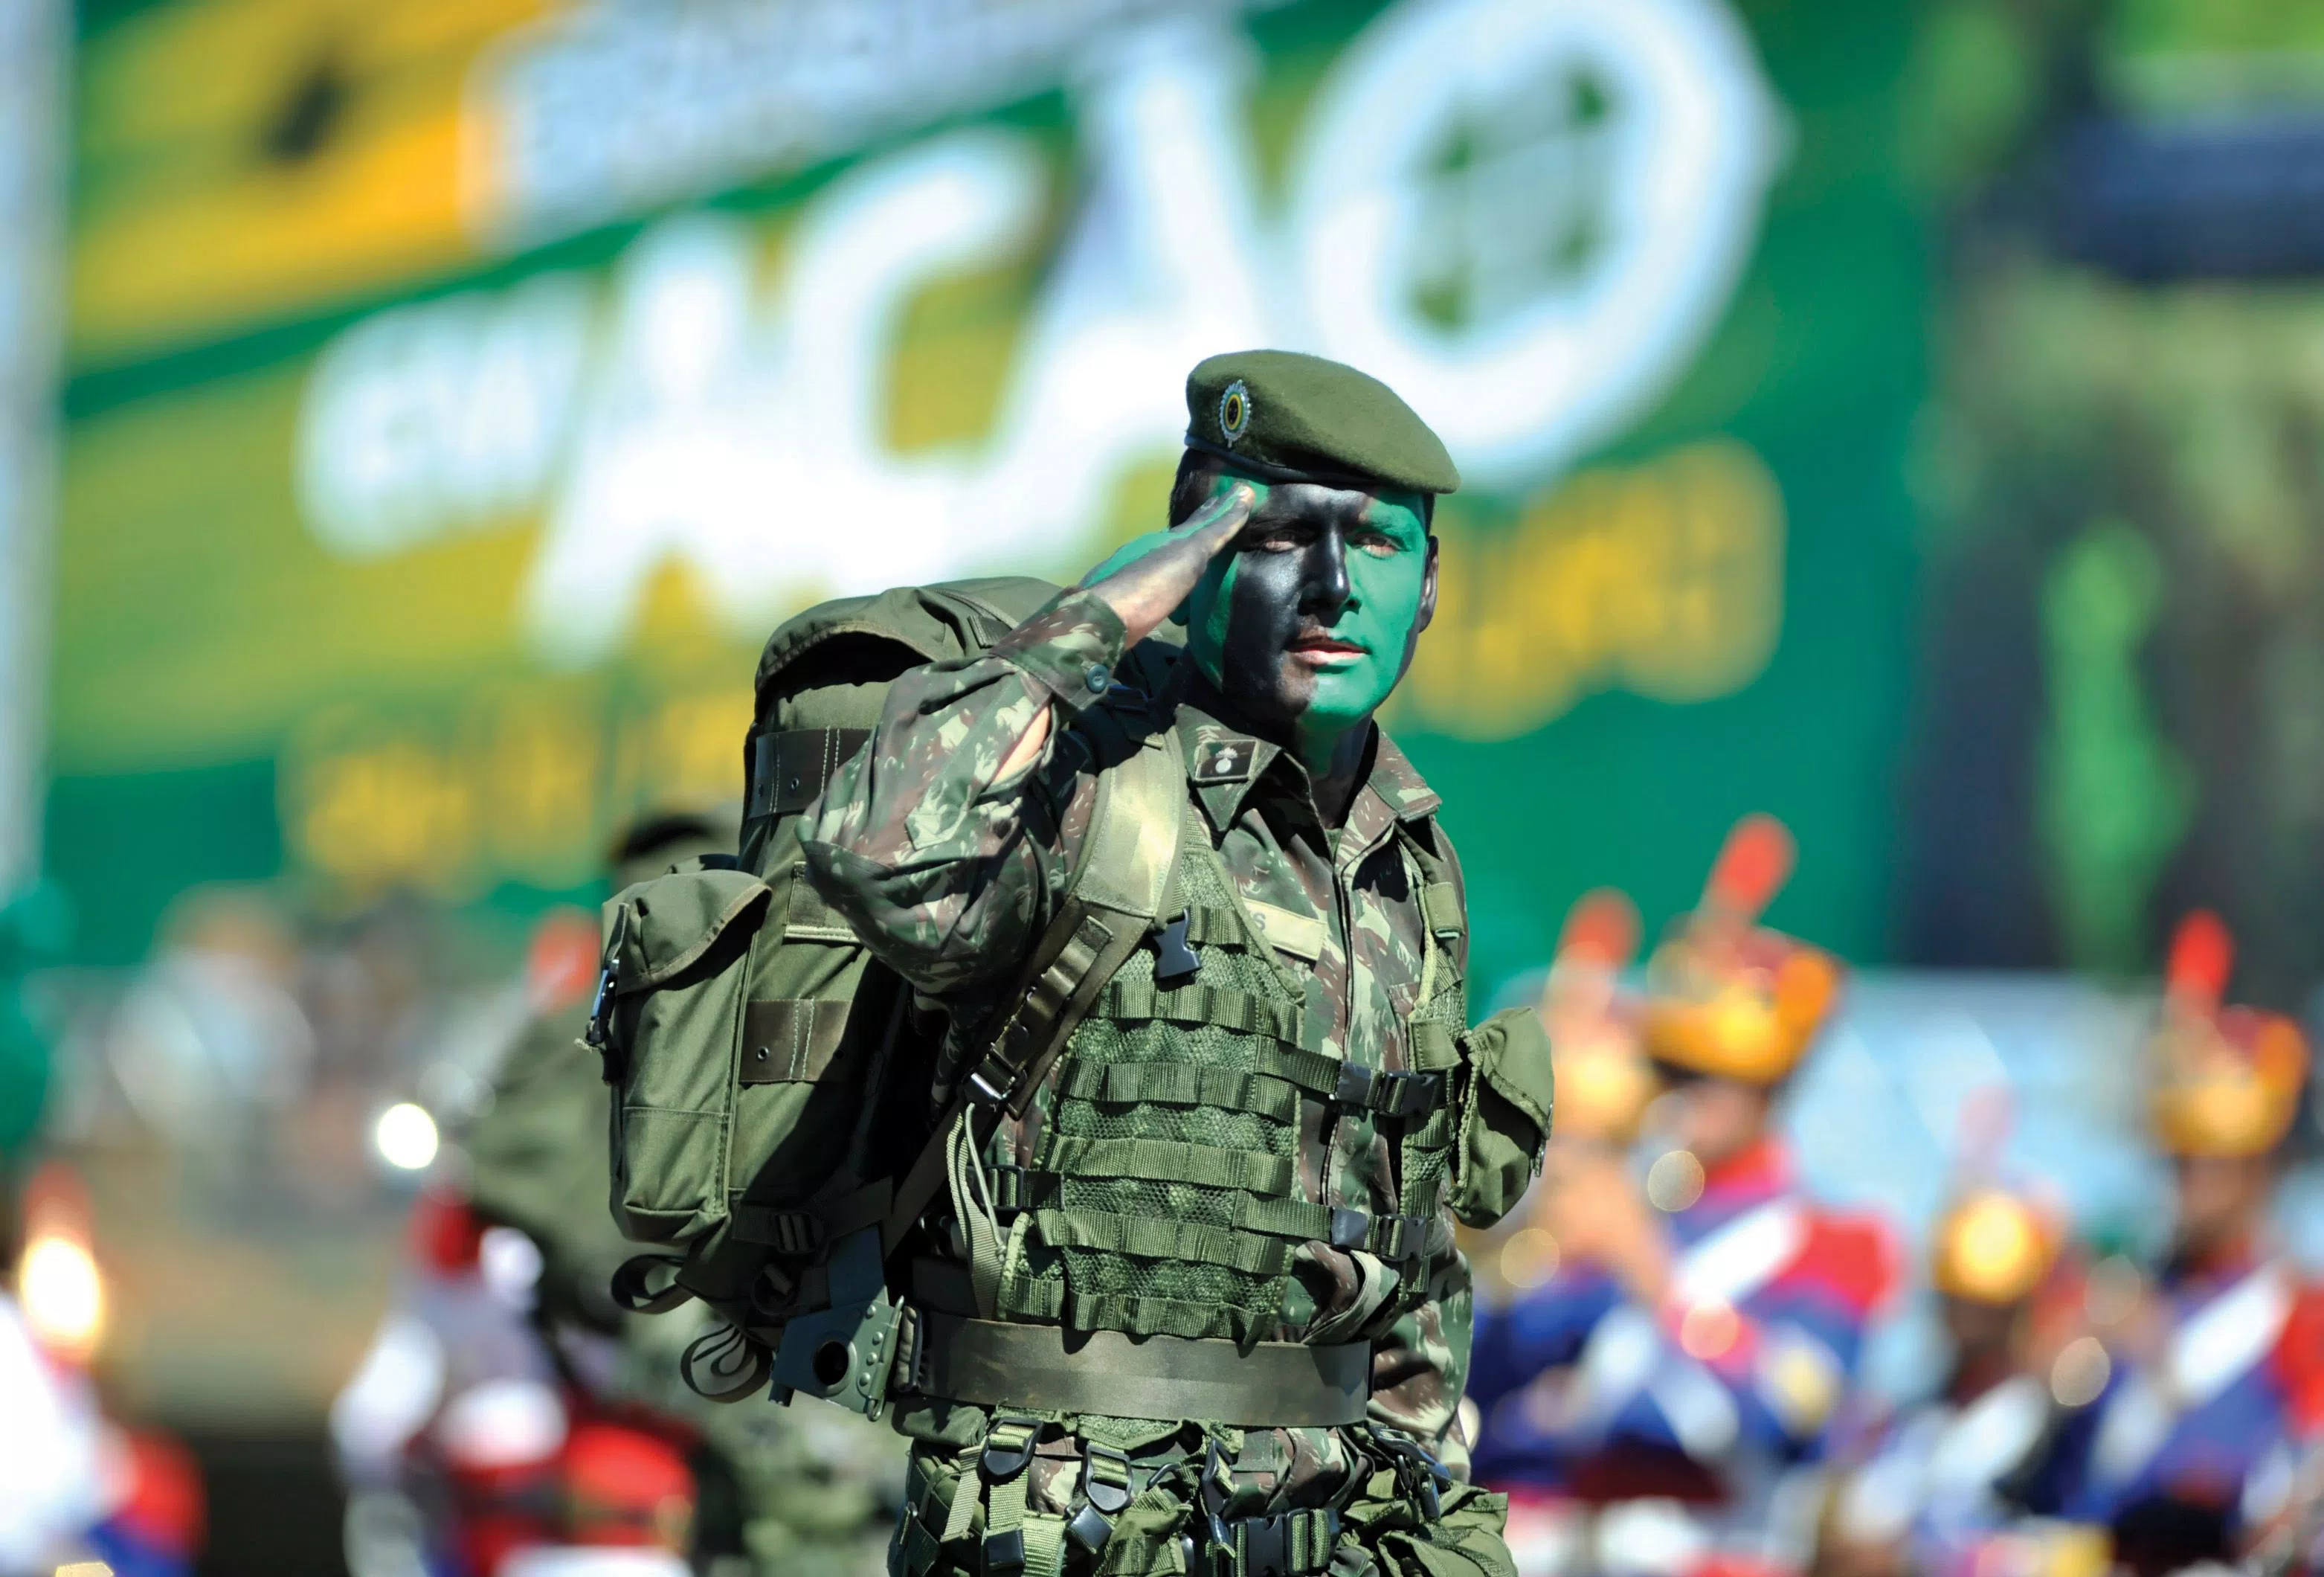 Passo a passo militar temporário do Exército Brasileiro 